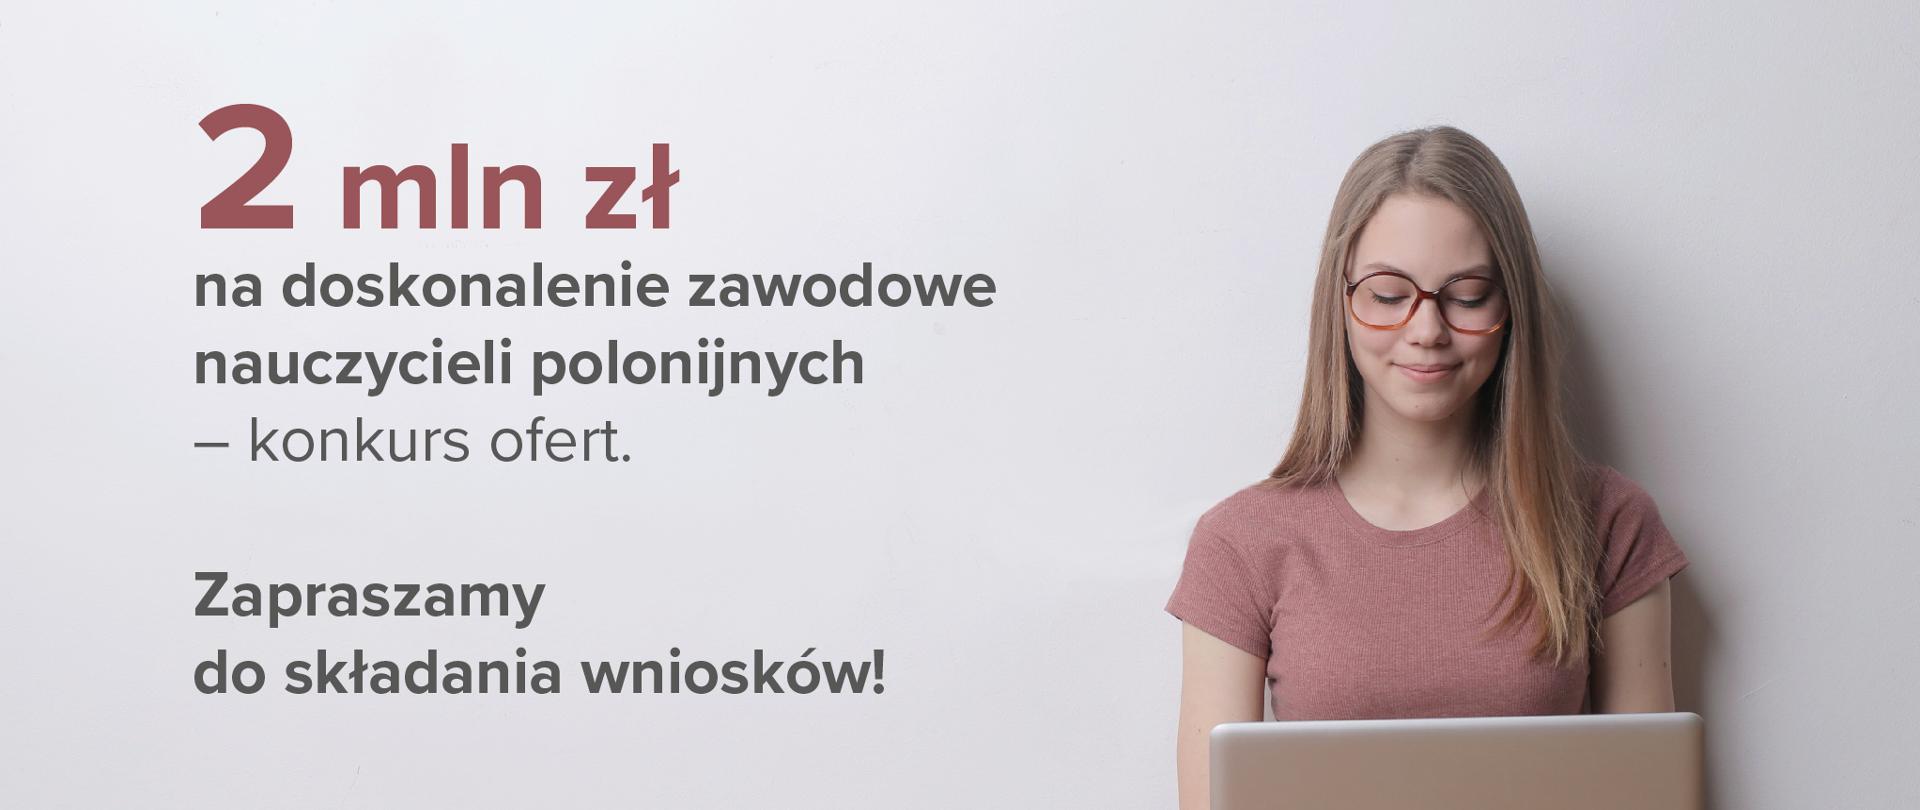 Kobieta w okularach z laptopem po prawo. Po lewo tekst na jasnoszarym tle: "2 mln zł na doskonalenie zawodowe nauczycieli polonijnych – konkurs ofert. Zapraszamy do składania wniosków!"